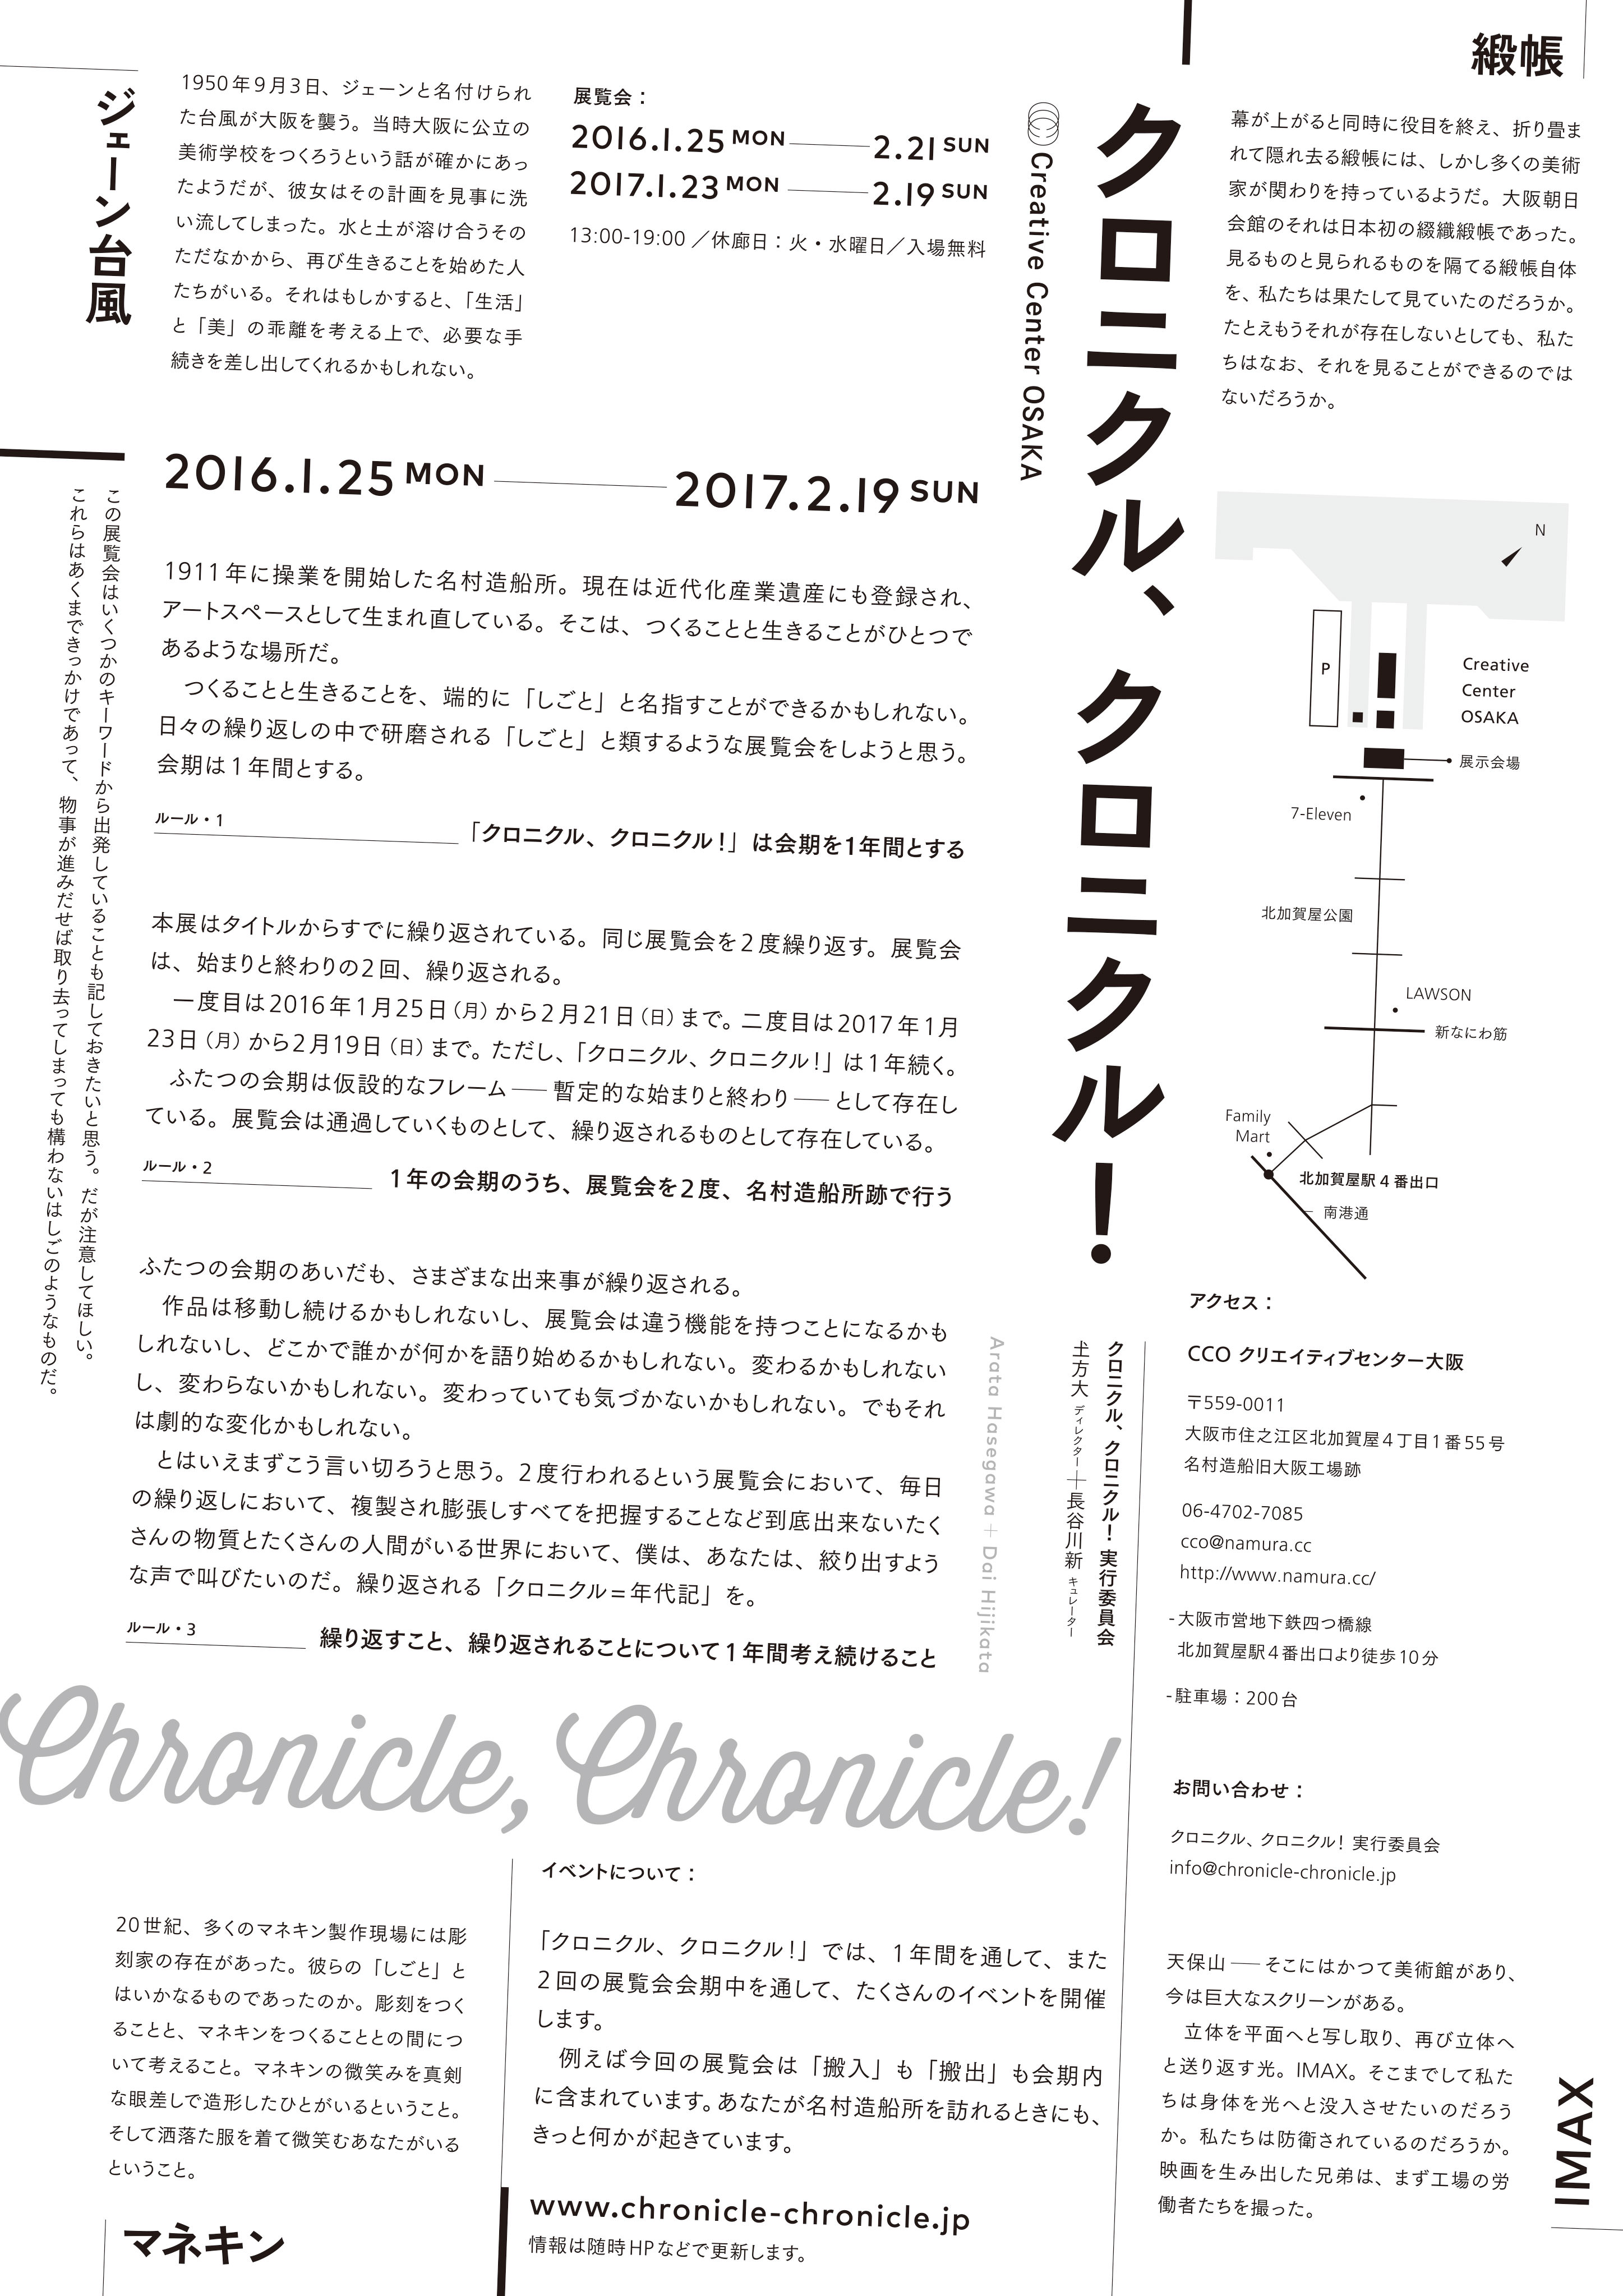 クロニクル、クロニクル! Chronicle, Chronicle! - CCO クリエイティブセンター大阪